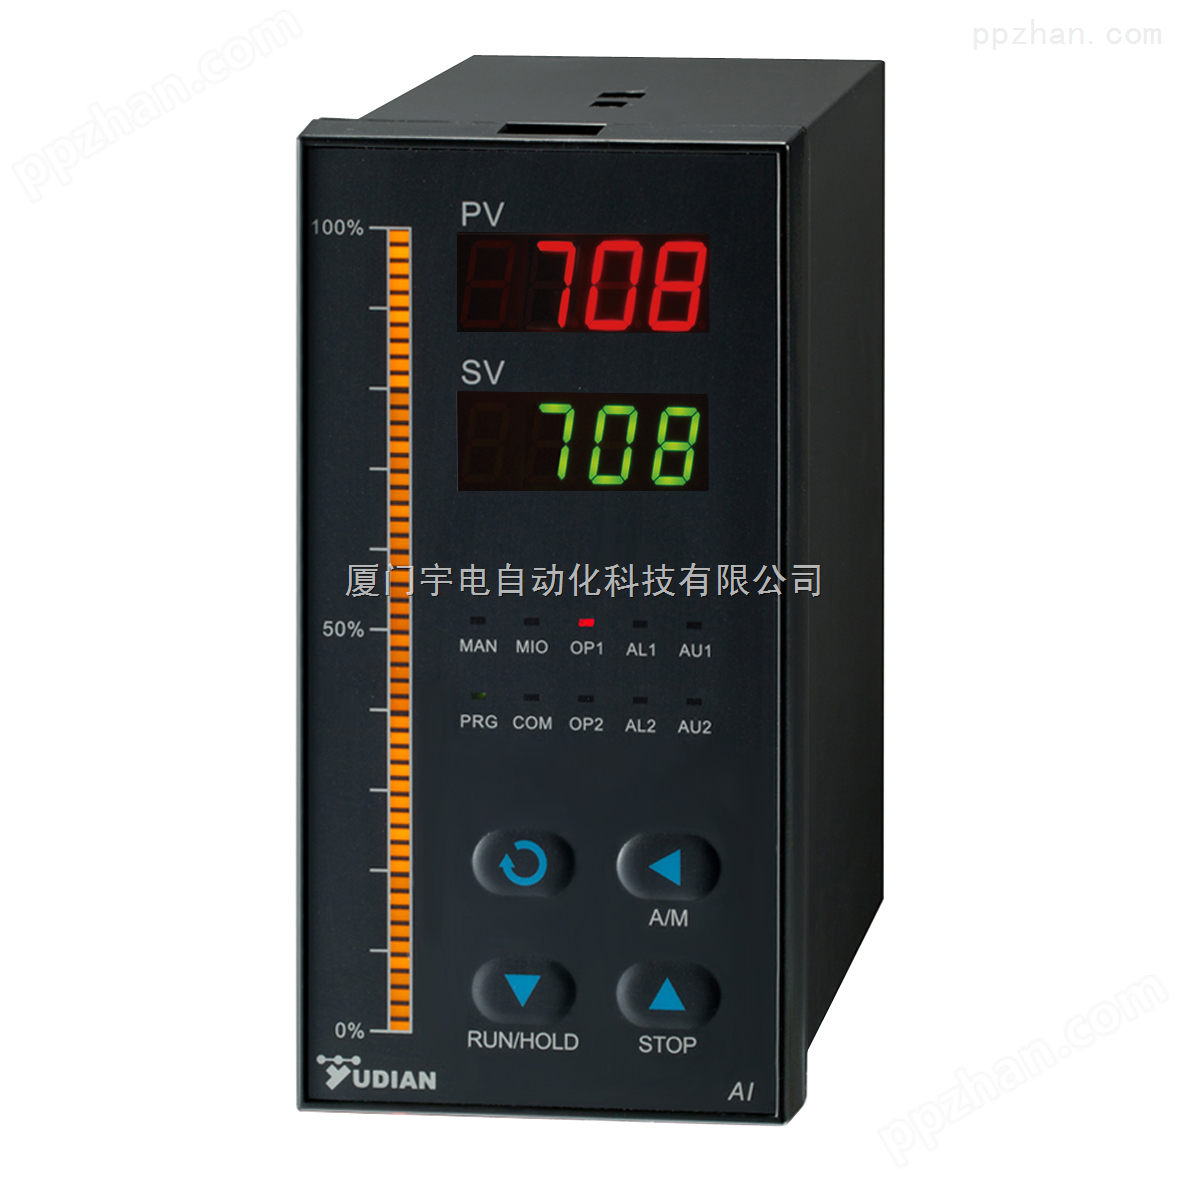 厦门宇电高性能智能温控器AI-708